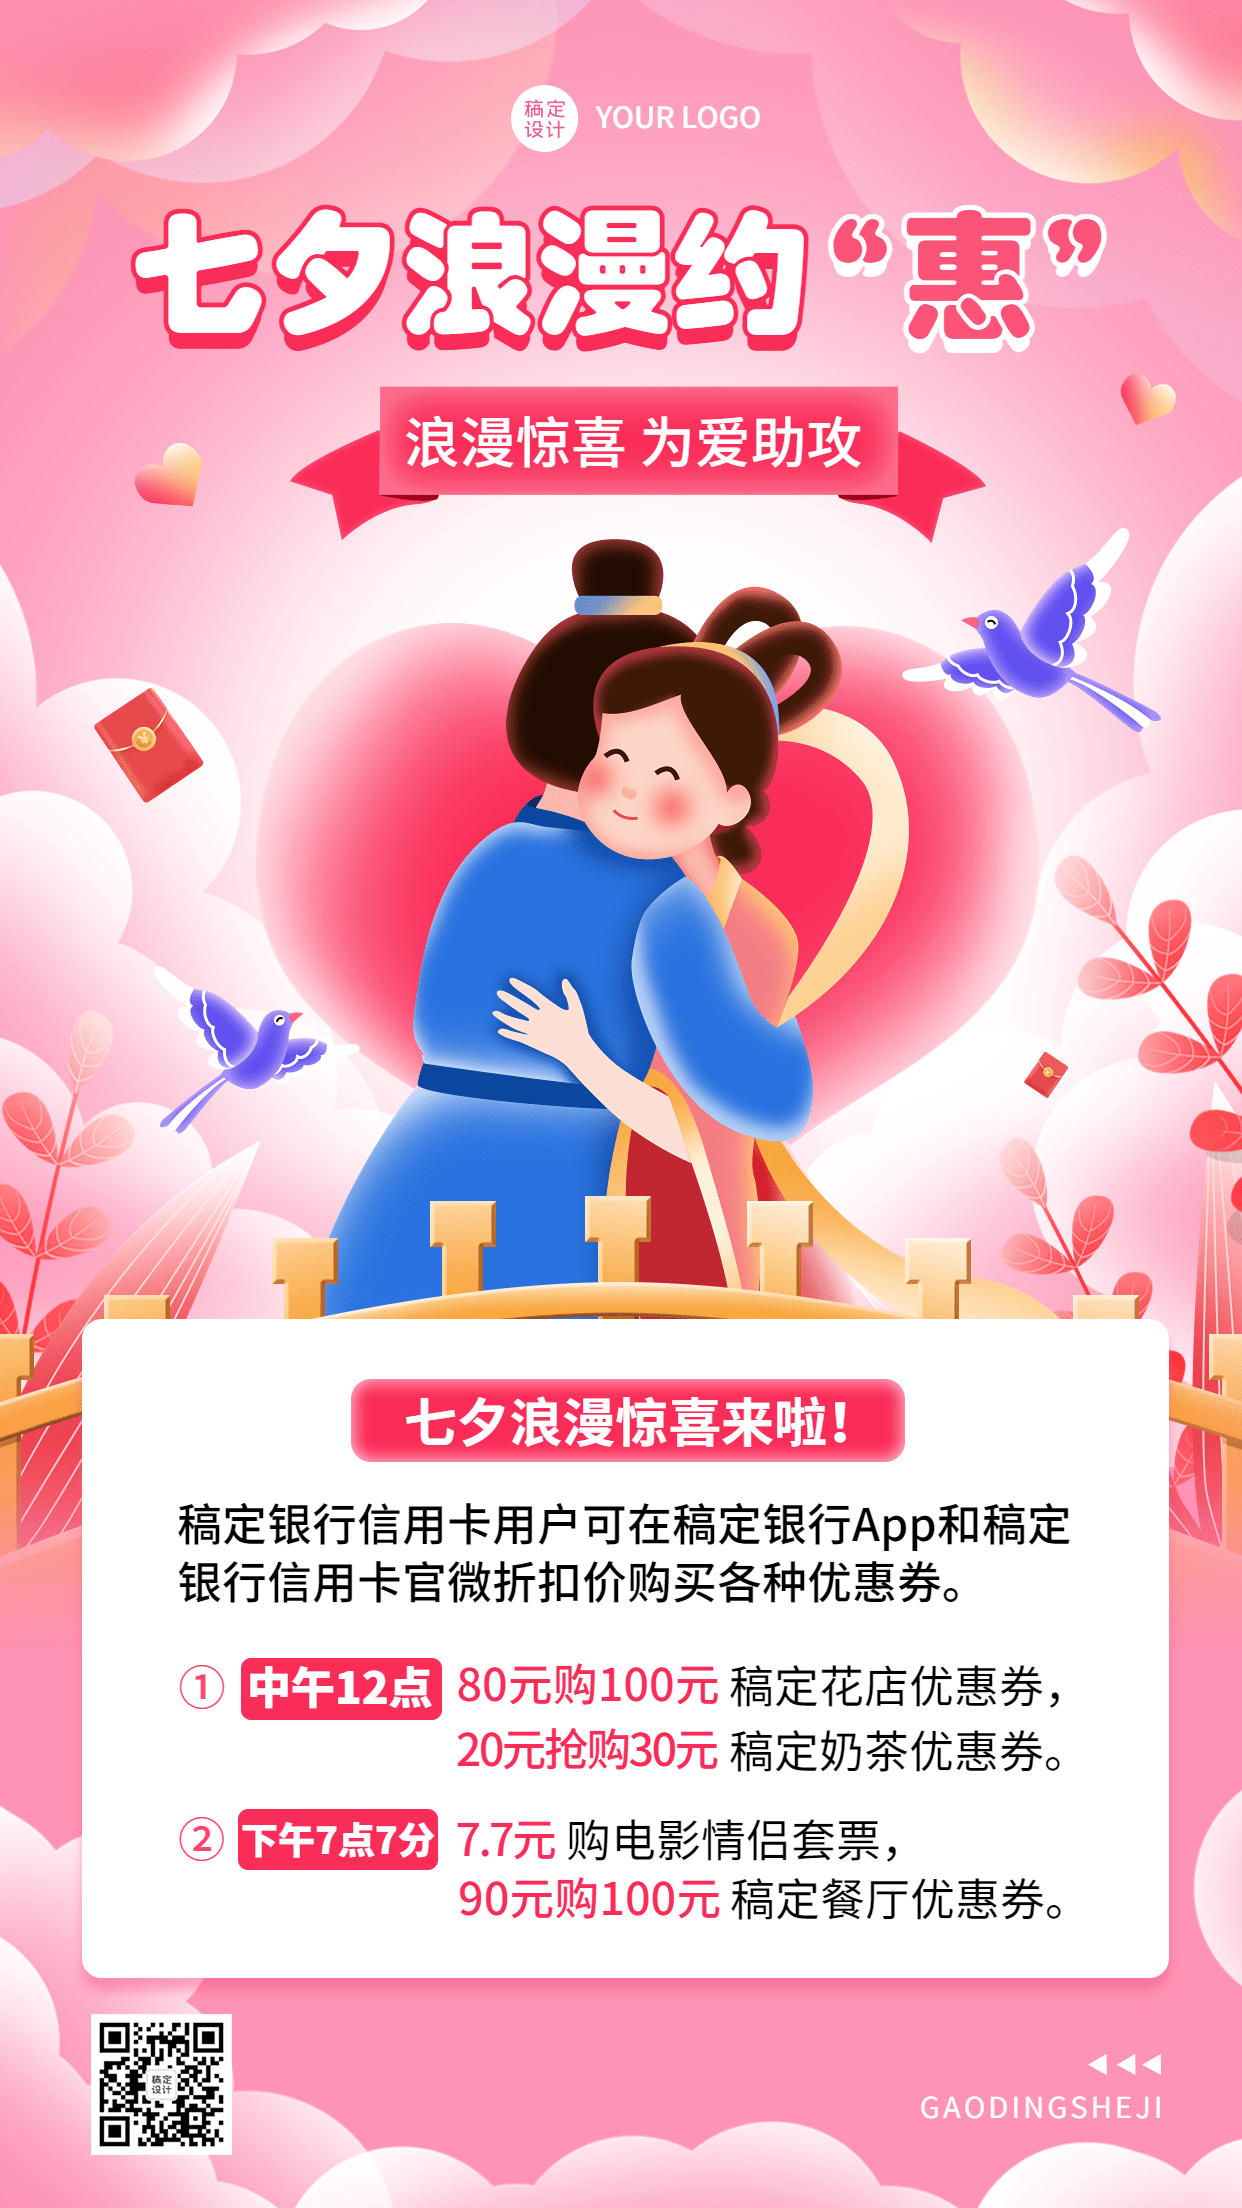 七夕节金融银行刷卡打折福利活动营销插画手机海报预览效果